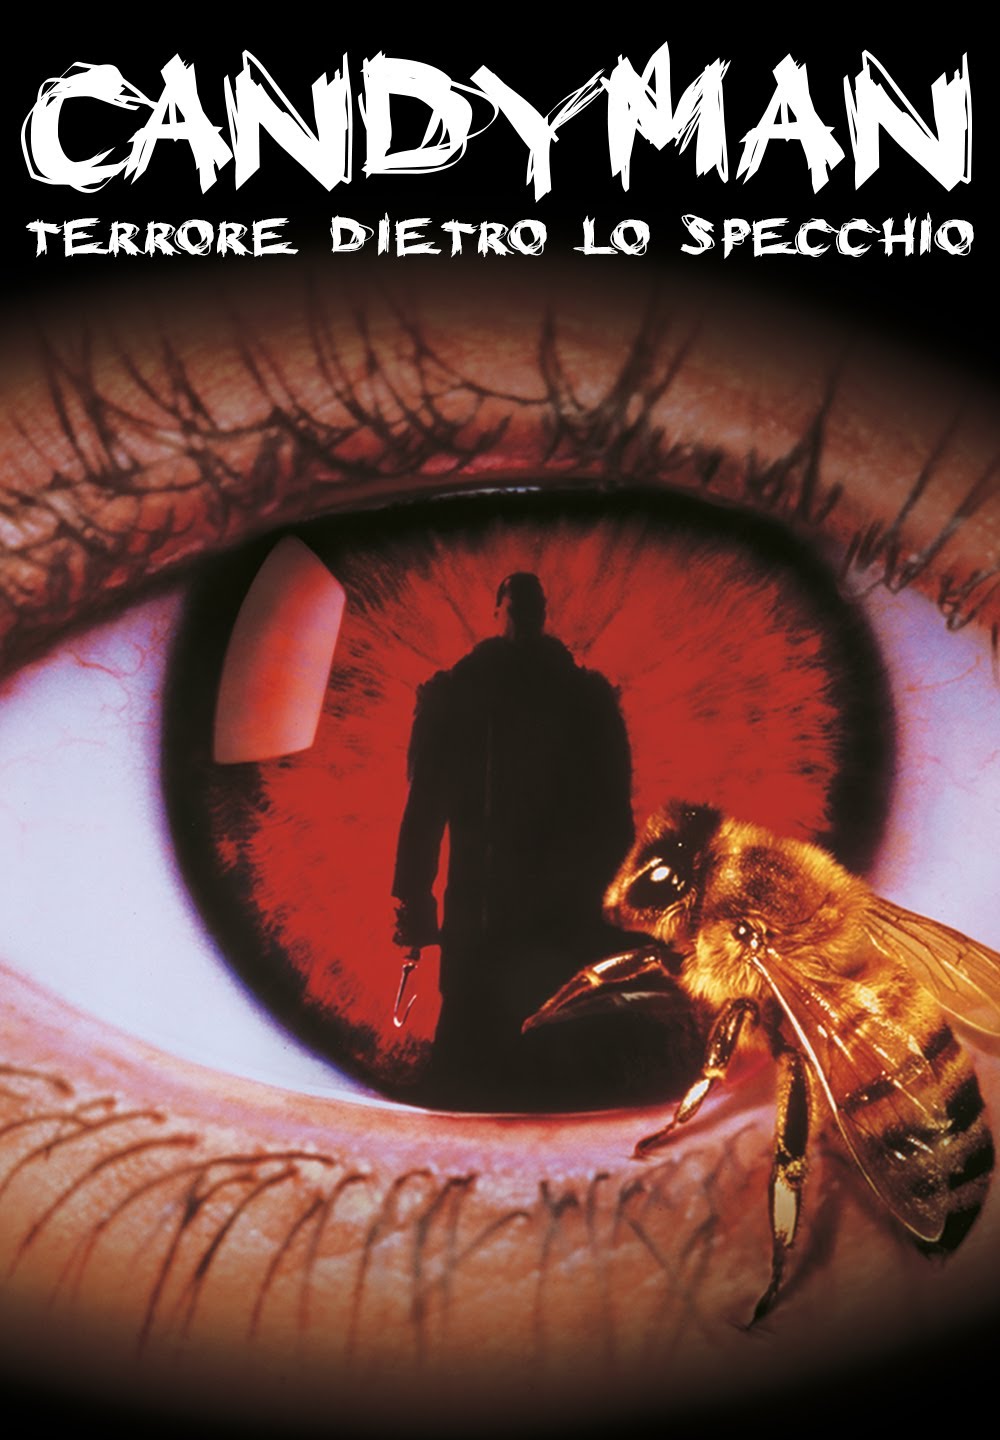 Candyman – Terrore dietro lo specchio [HD] (1992)